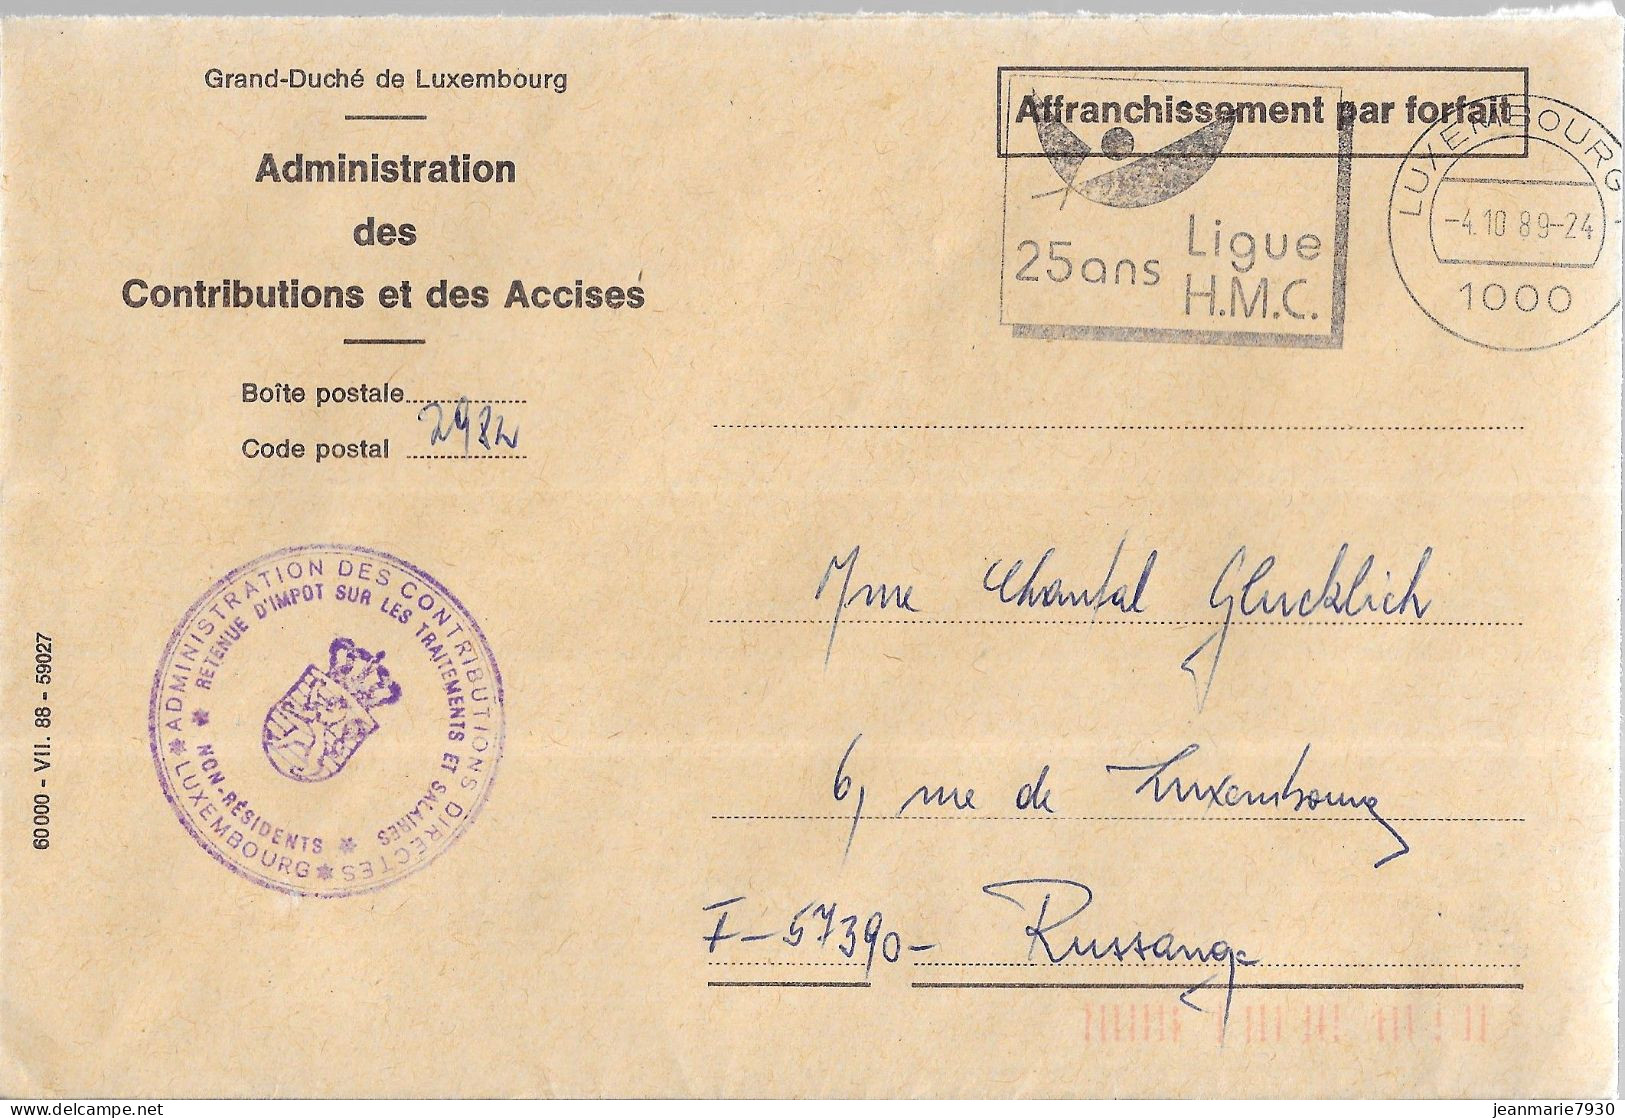 H330 - LETTRE DE LUXEMBOURG DU 04/10/89 - FLAMME - ADMINISTRATION DES CONTRIBUTIONS ET DES ACCISES - Macchine Per Obliterare (EMA)